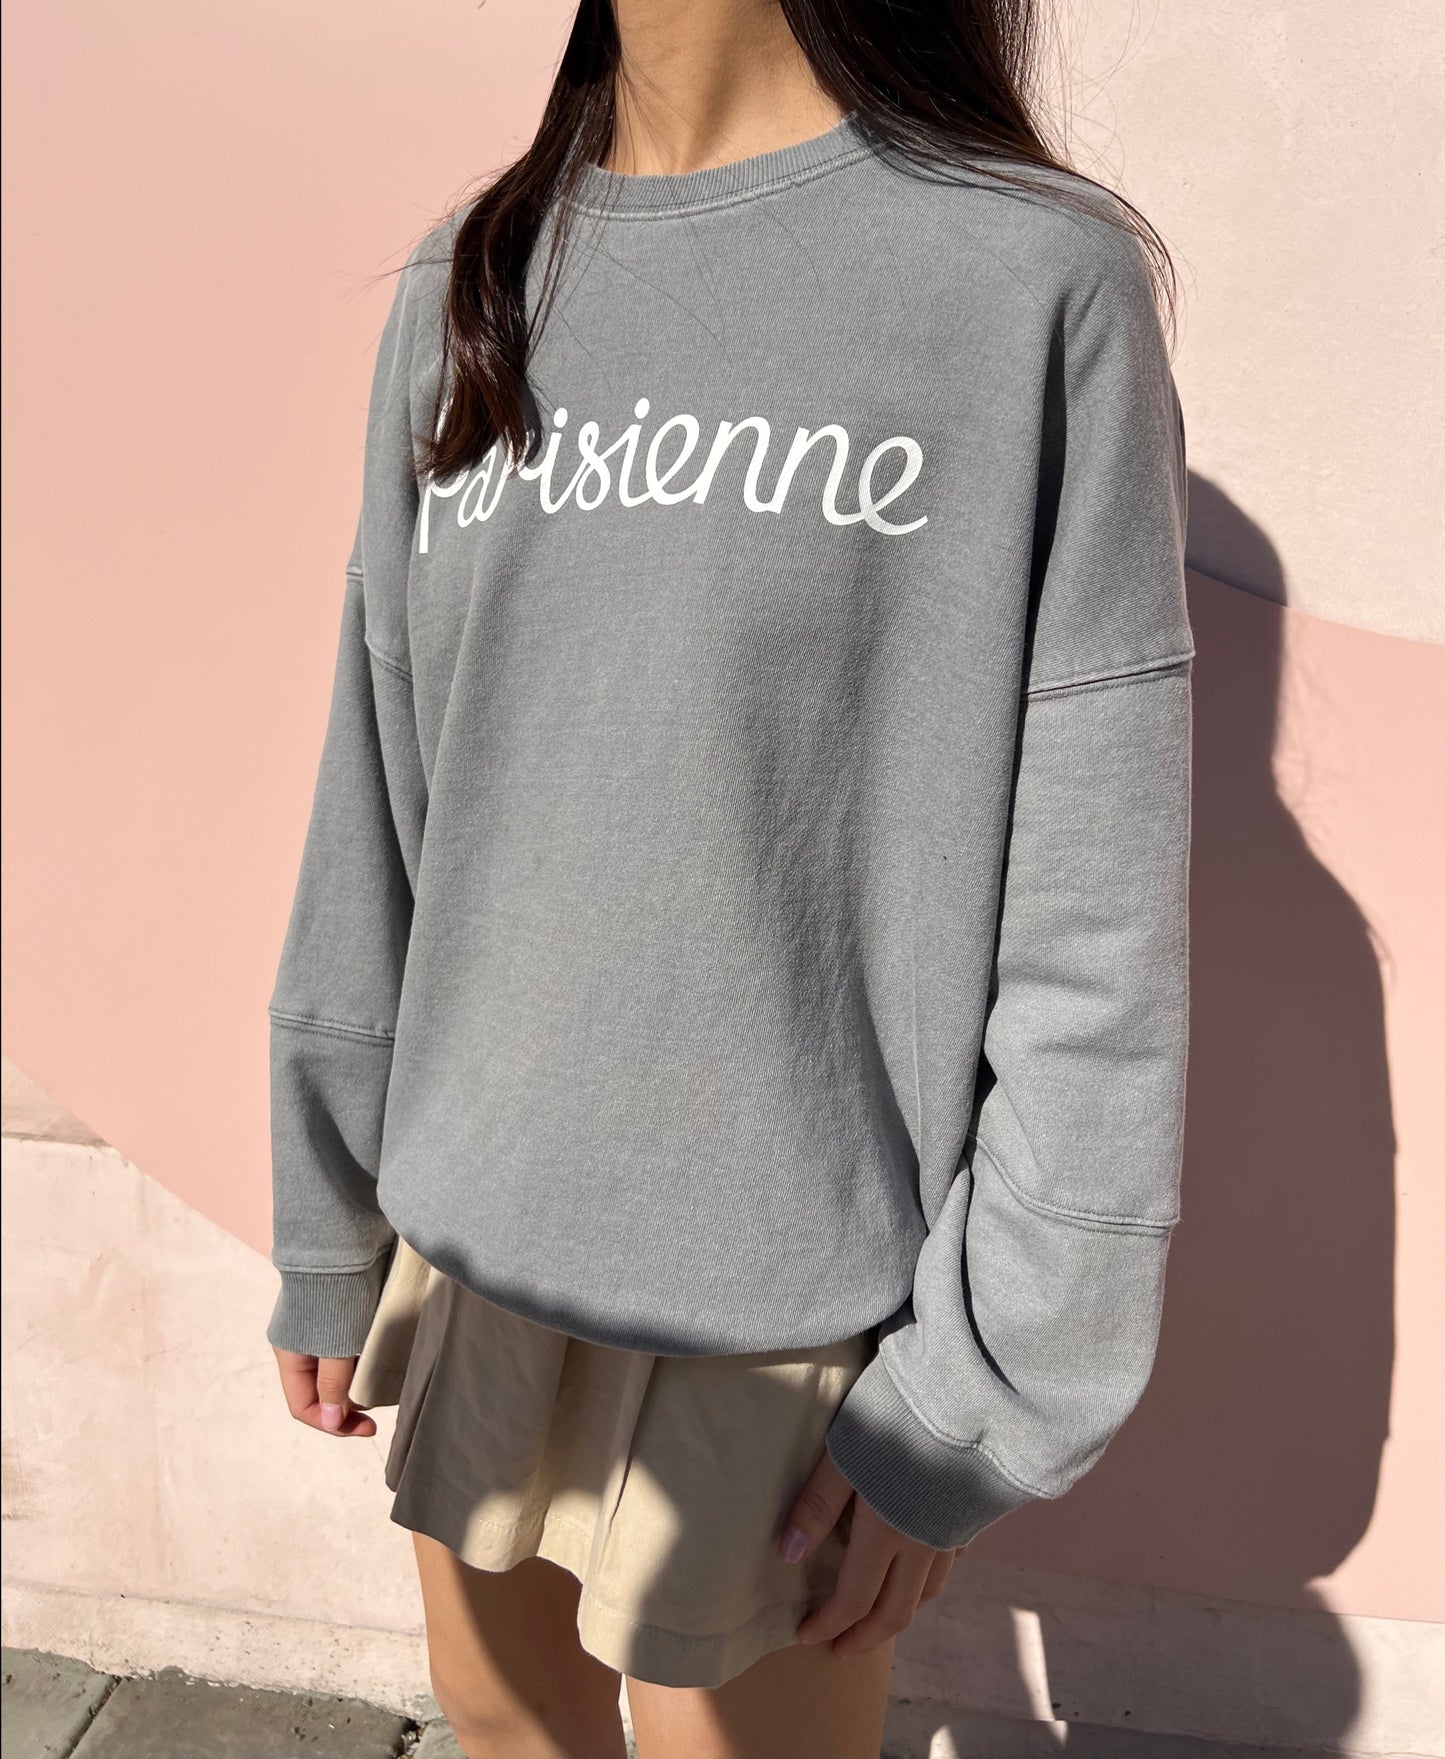 "Parisienne" Grey Sweatshirt